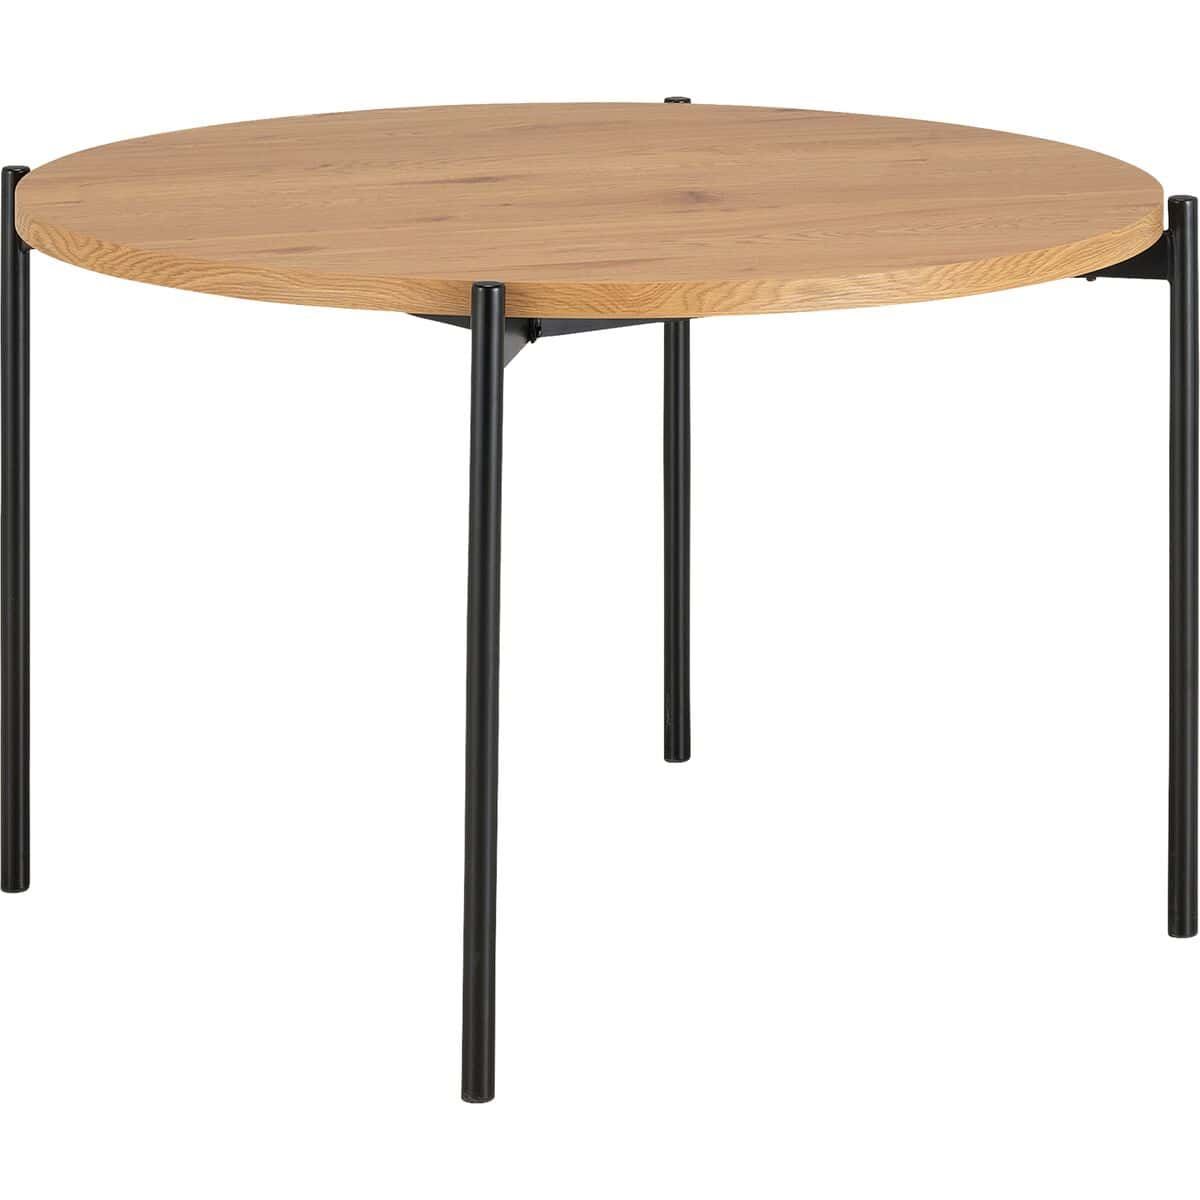 Table chêne massif 4 personnes ronde Ø110cm - Meuble Passion